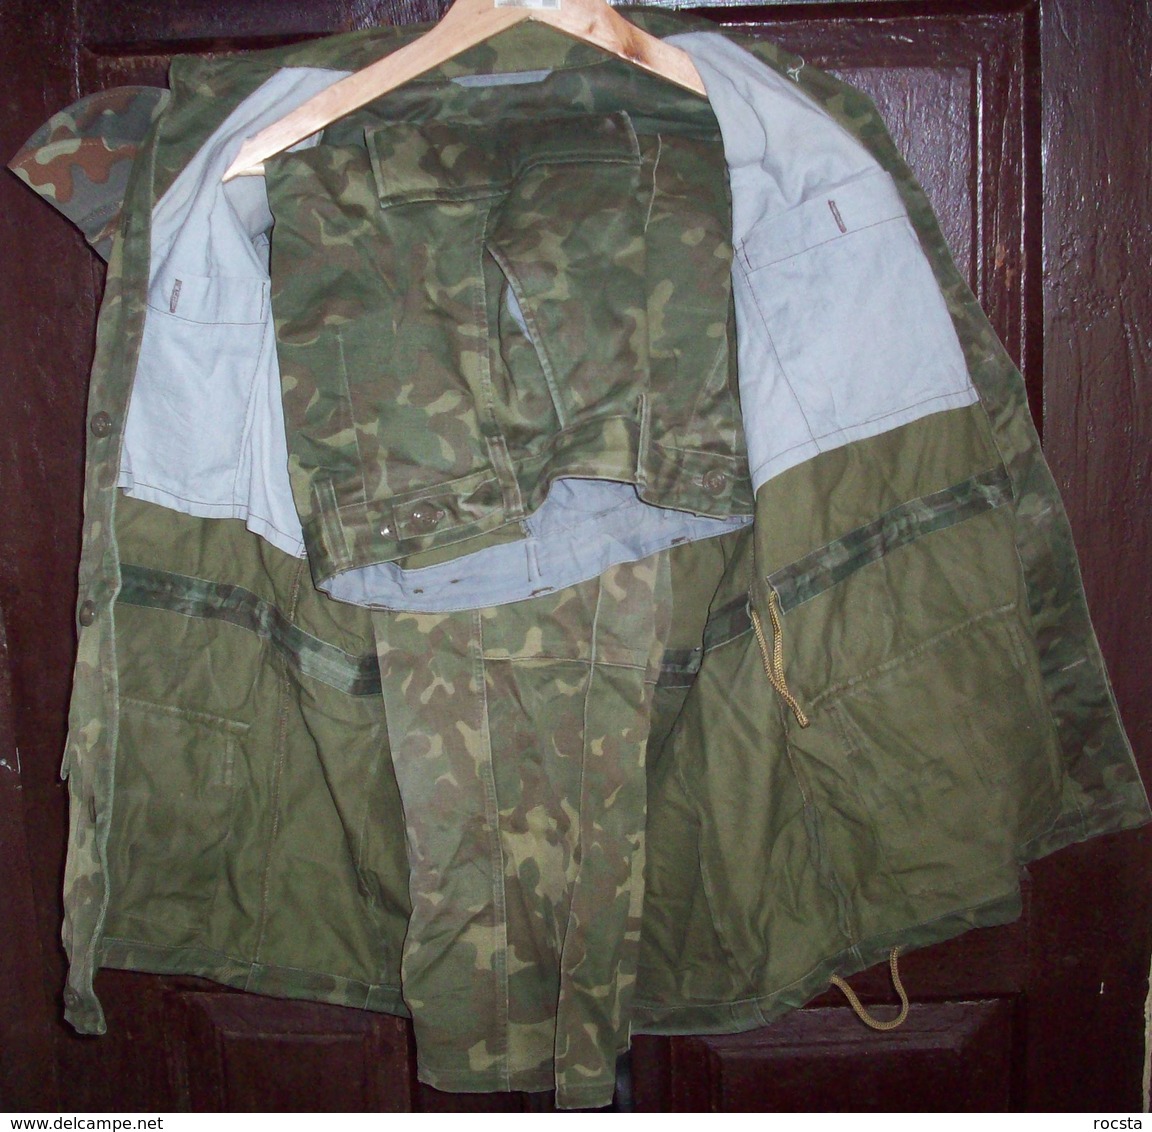 Ukrainian Army Ensign Camouflage Uniform Set (cap, Jacket, Pants) ATO - Size 46 - Uniform